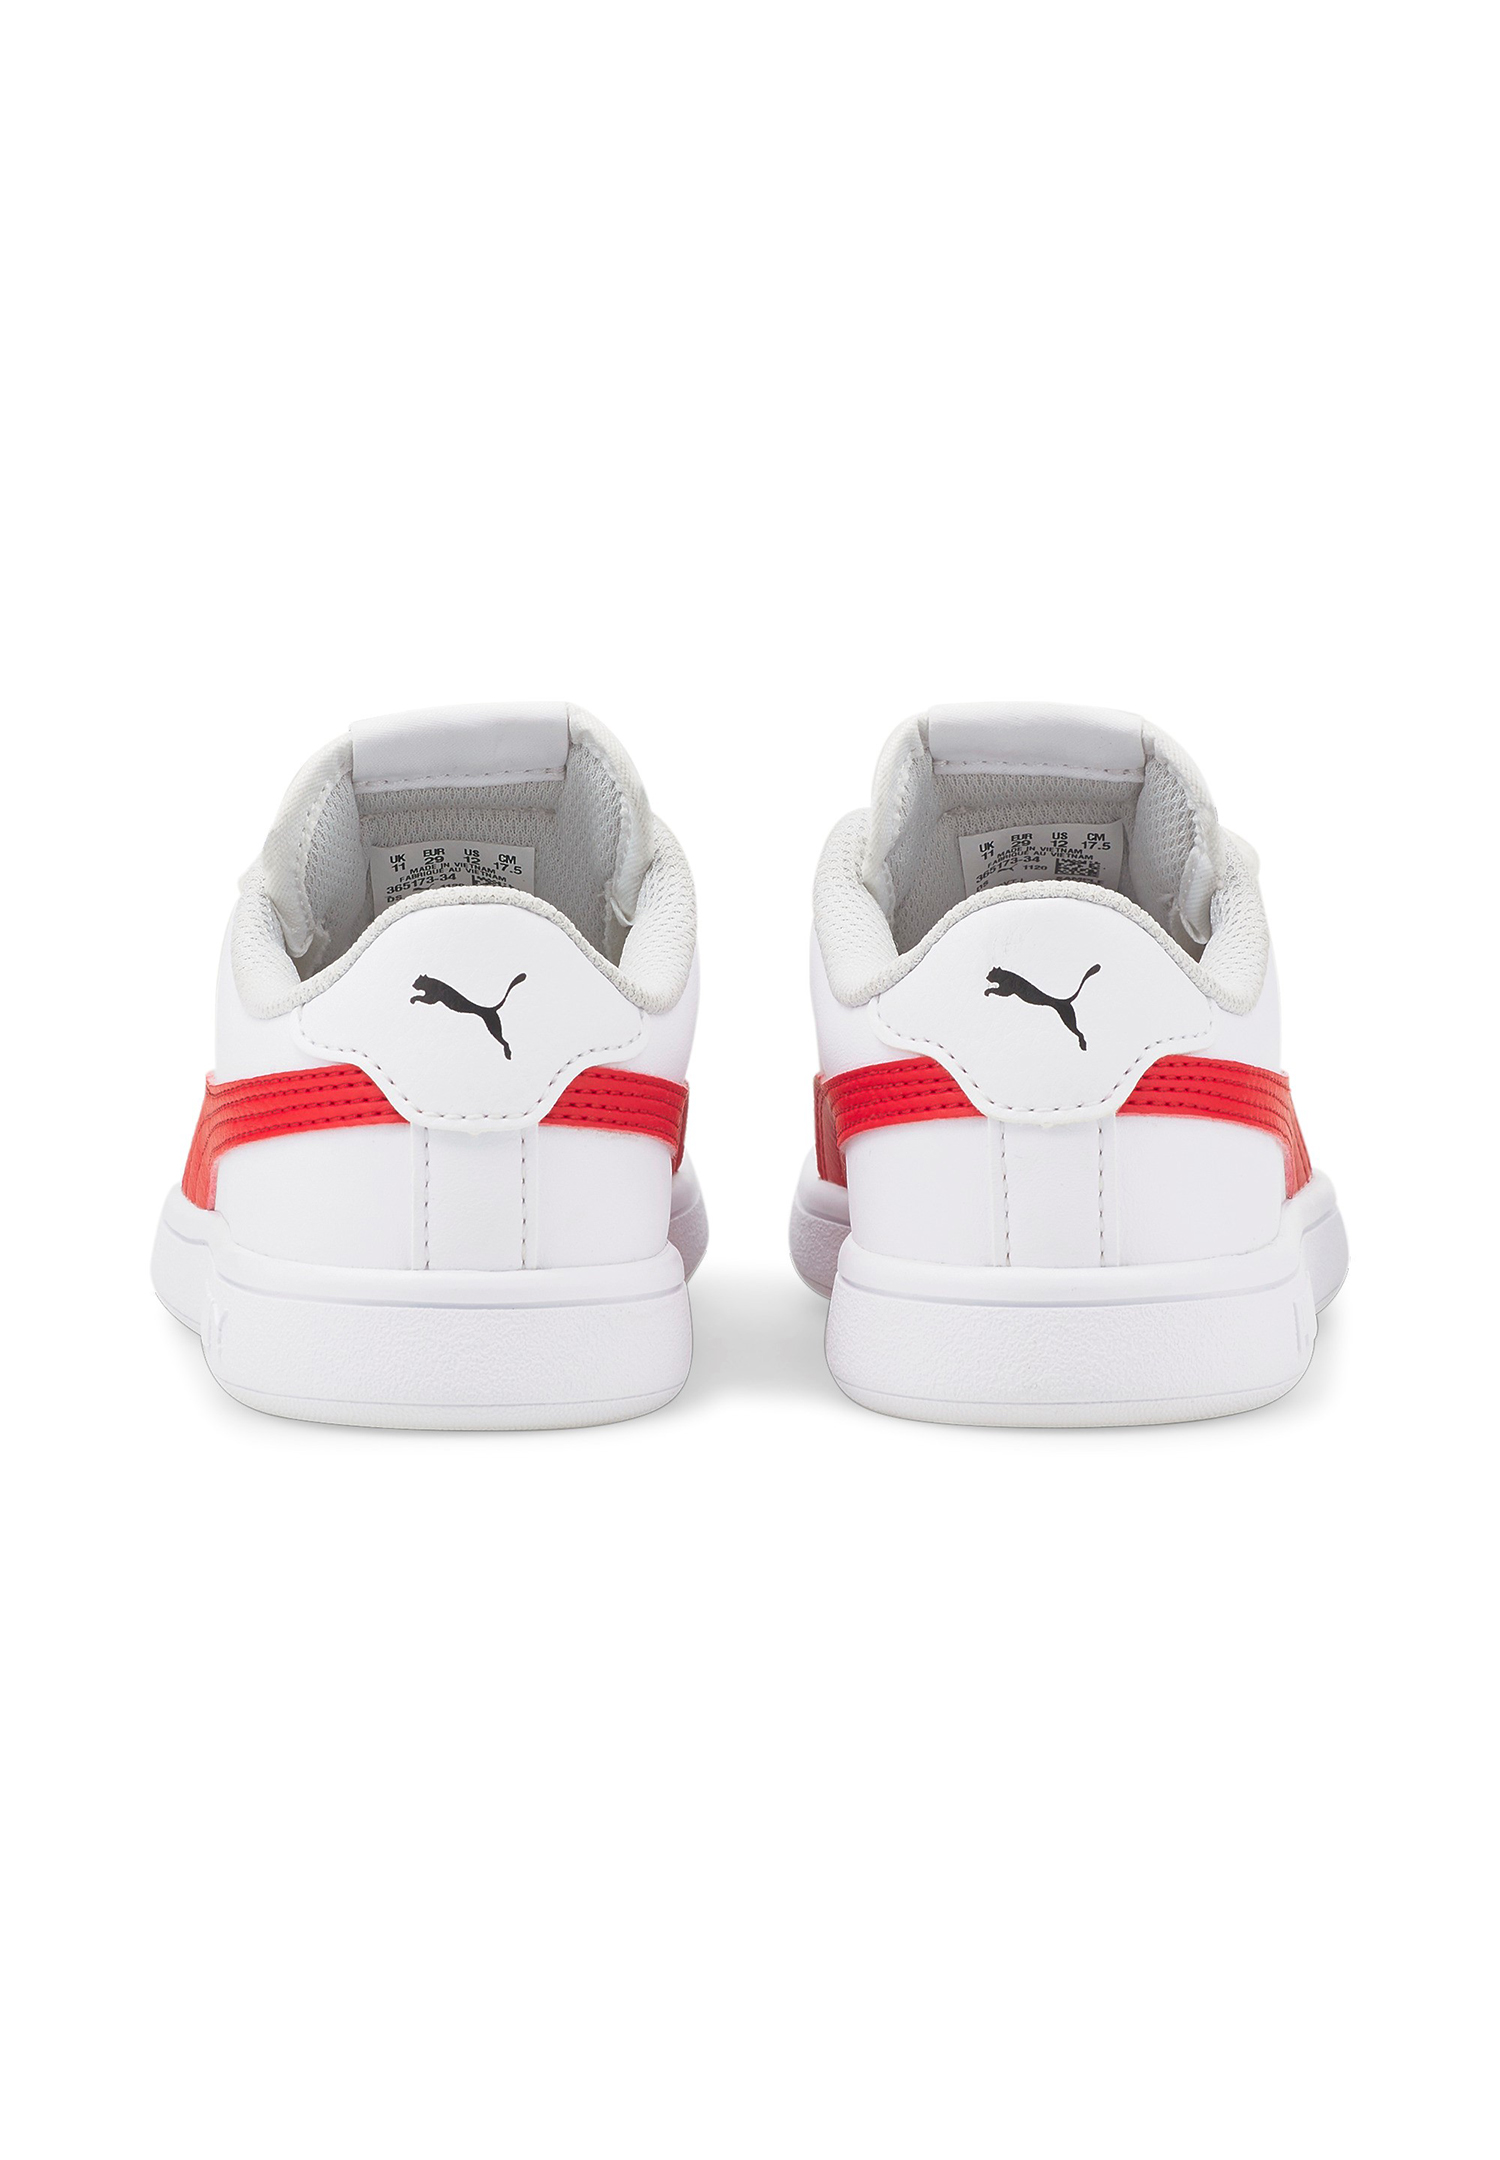 PUMA Smash V2 L V PS Kids Sneaker Schuhe weiss 365173 34